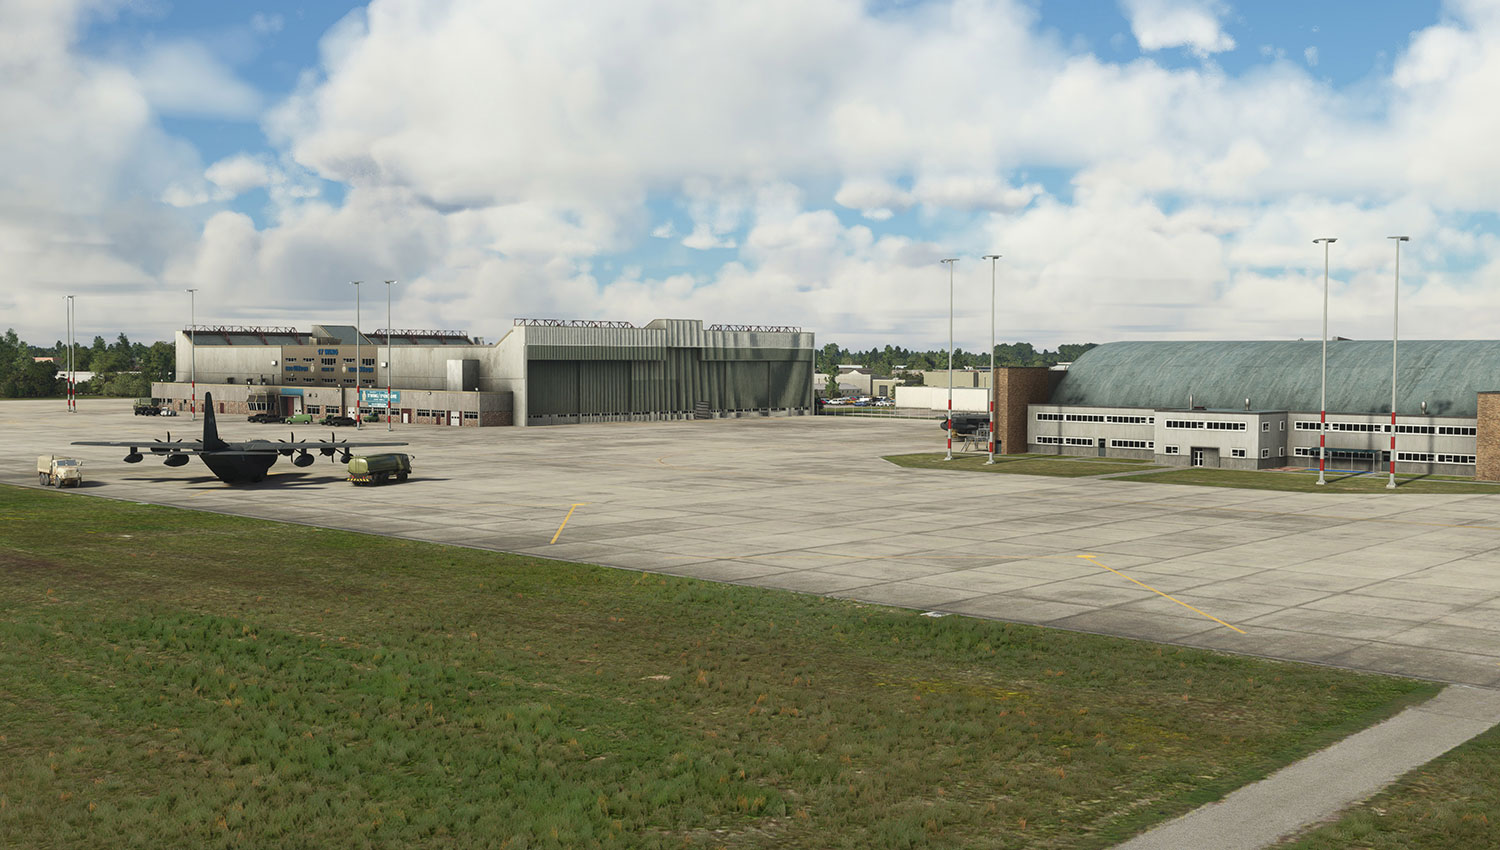 FSimStudios - CYWG - Winnipeg International Airport MSFS